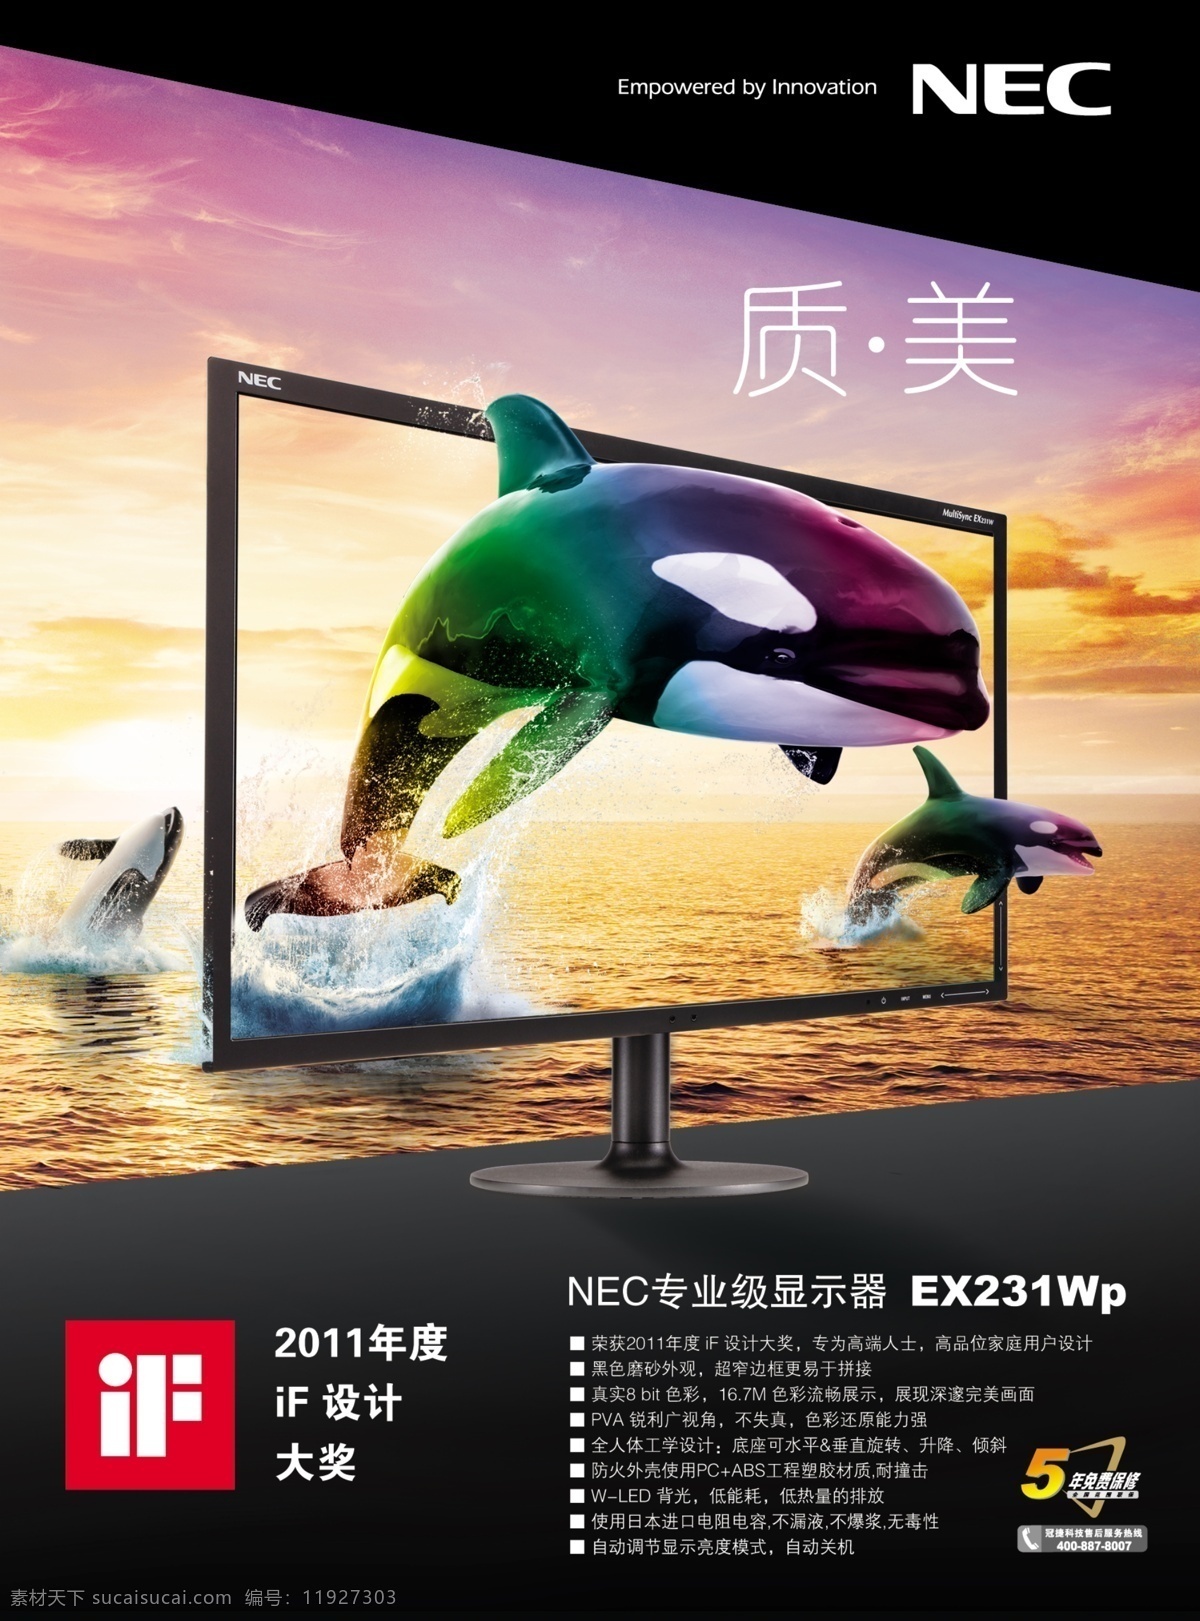 nec 显示器 模板 显示器广告 朝霞篇 鲸鱼 海洋 朝霞 水花 广告设计模板 源文件 分层 红色